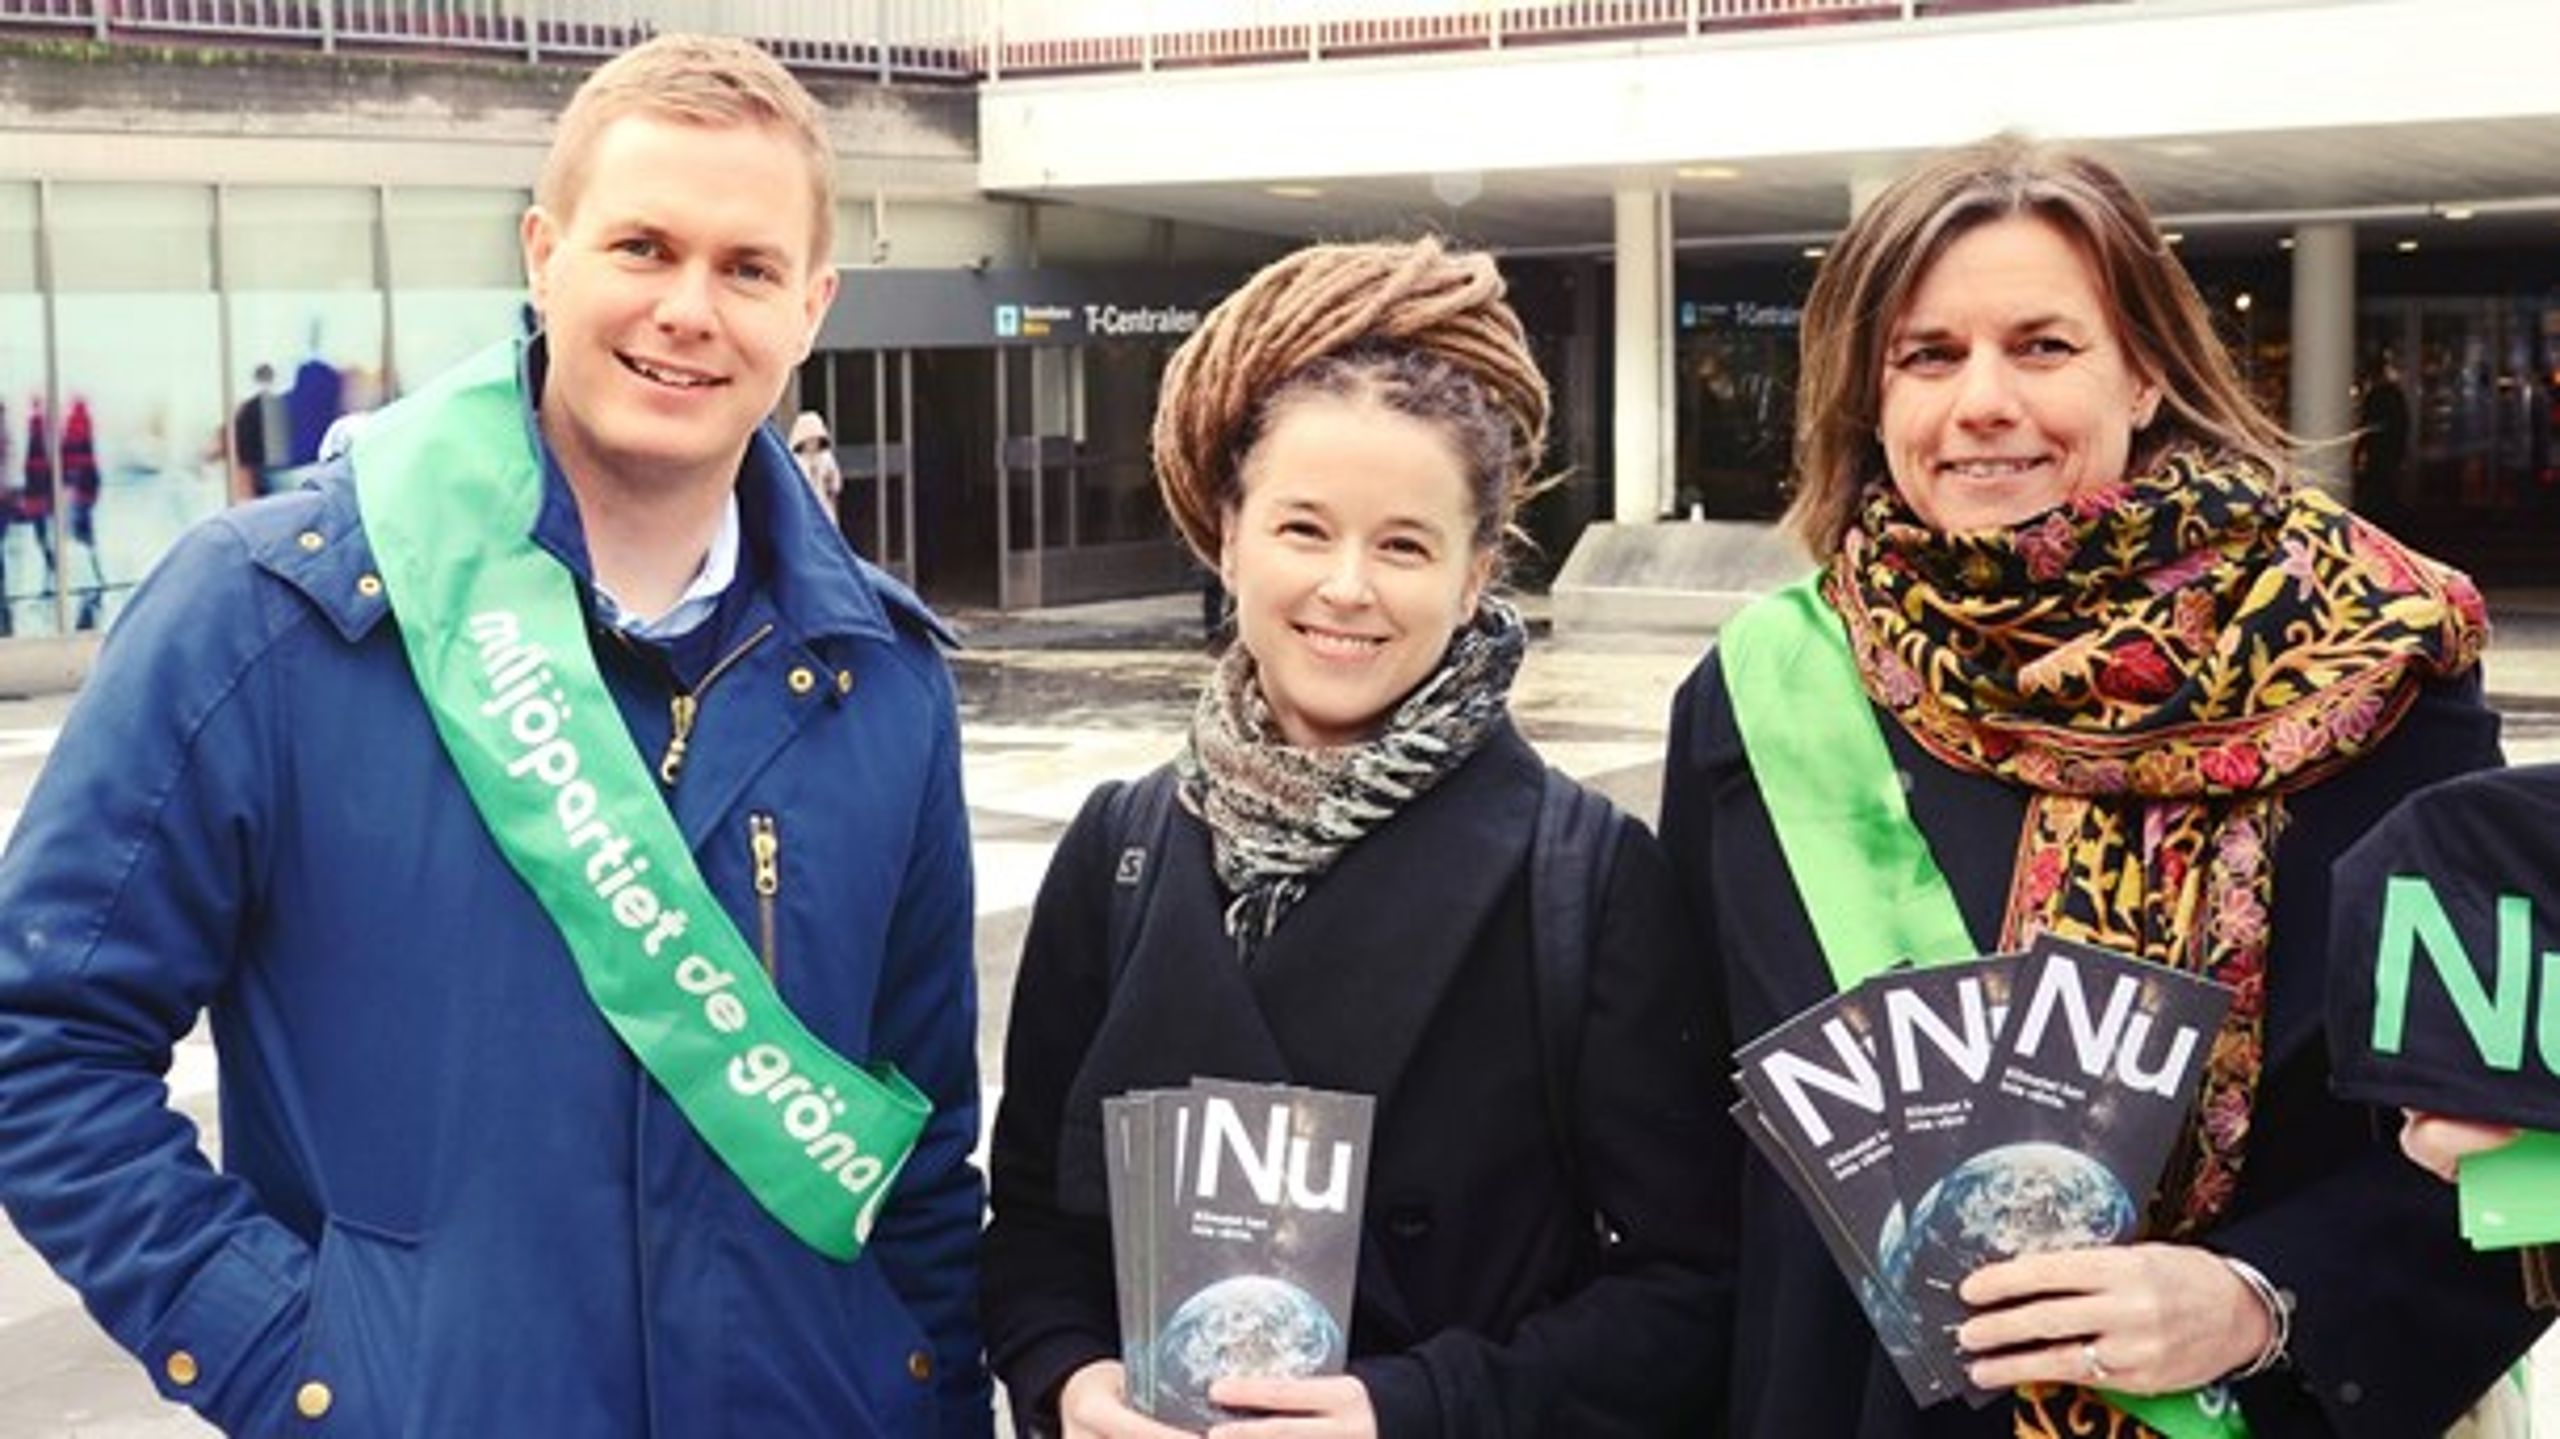 Språkrören Gustav Fridolin och Isabella Lövin tillsammans med partisekreteraren Amanda Lind när kampanjen "Klimatet Nu" presenterades på Sergels Torg i Stockholm.